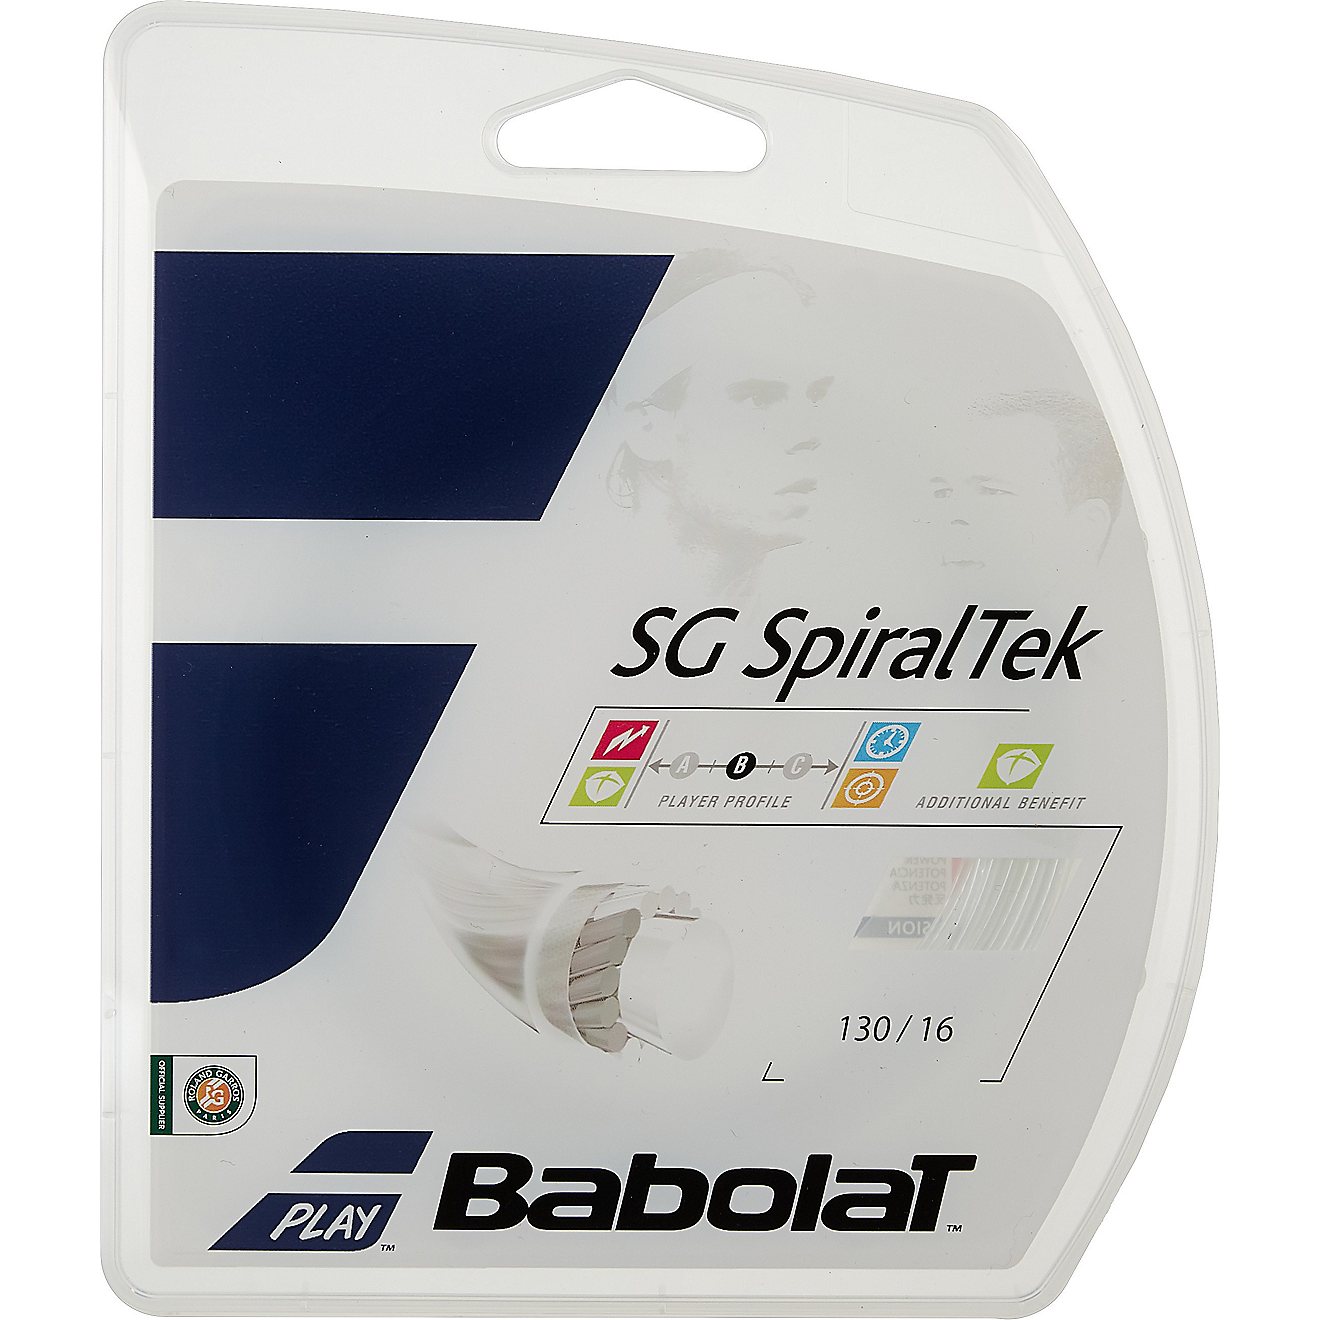 Babolat SG SpiralTek Racquet String 